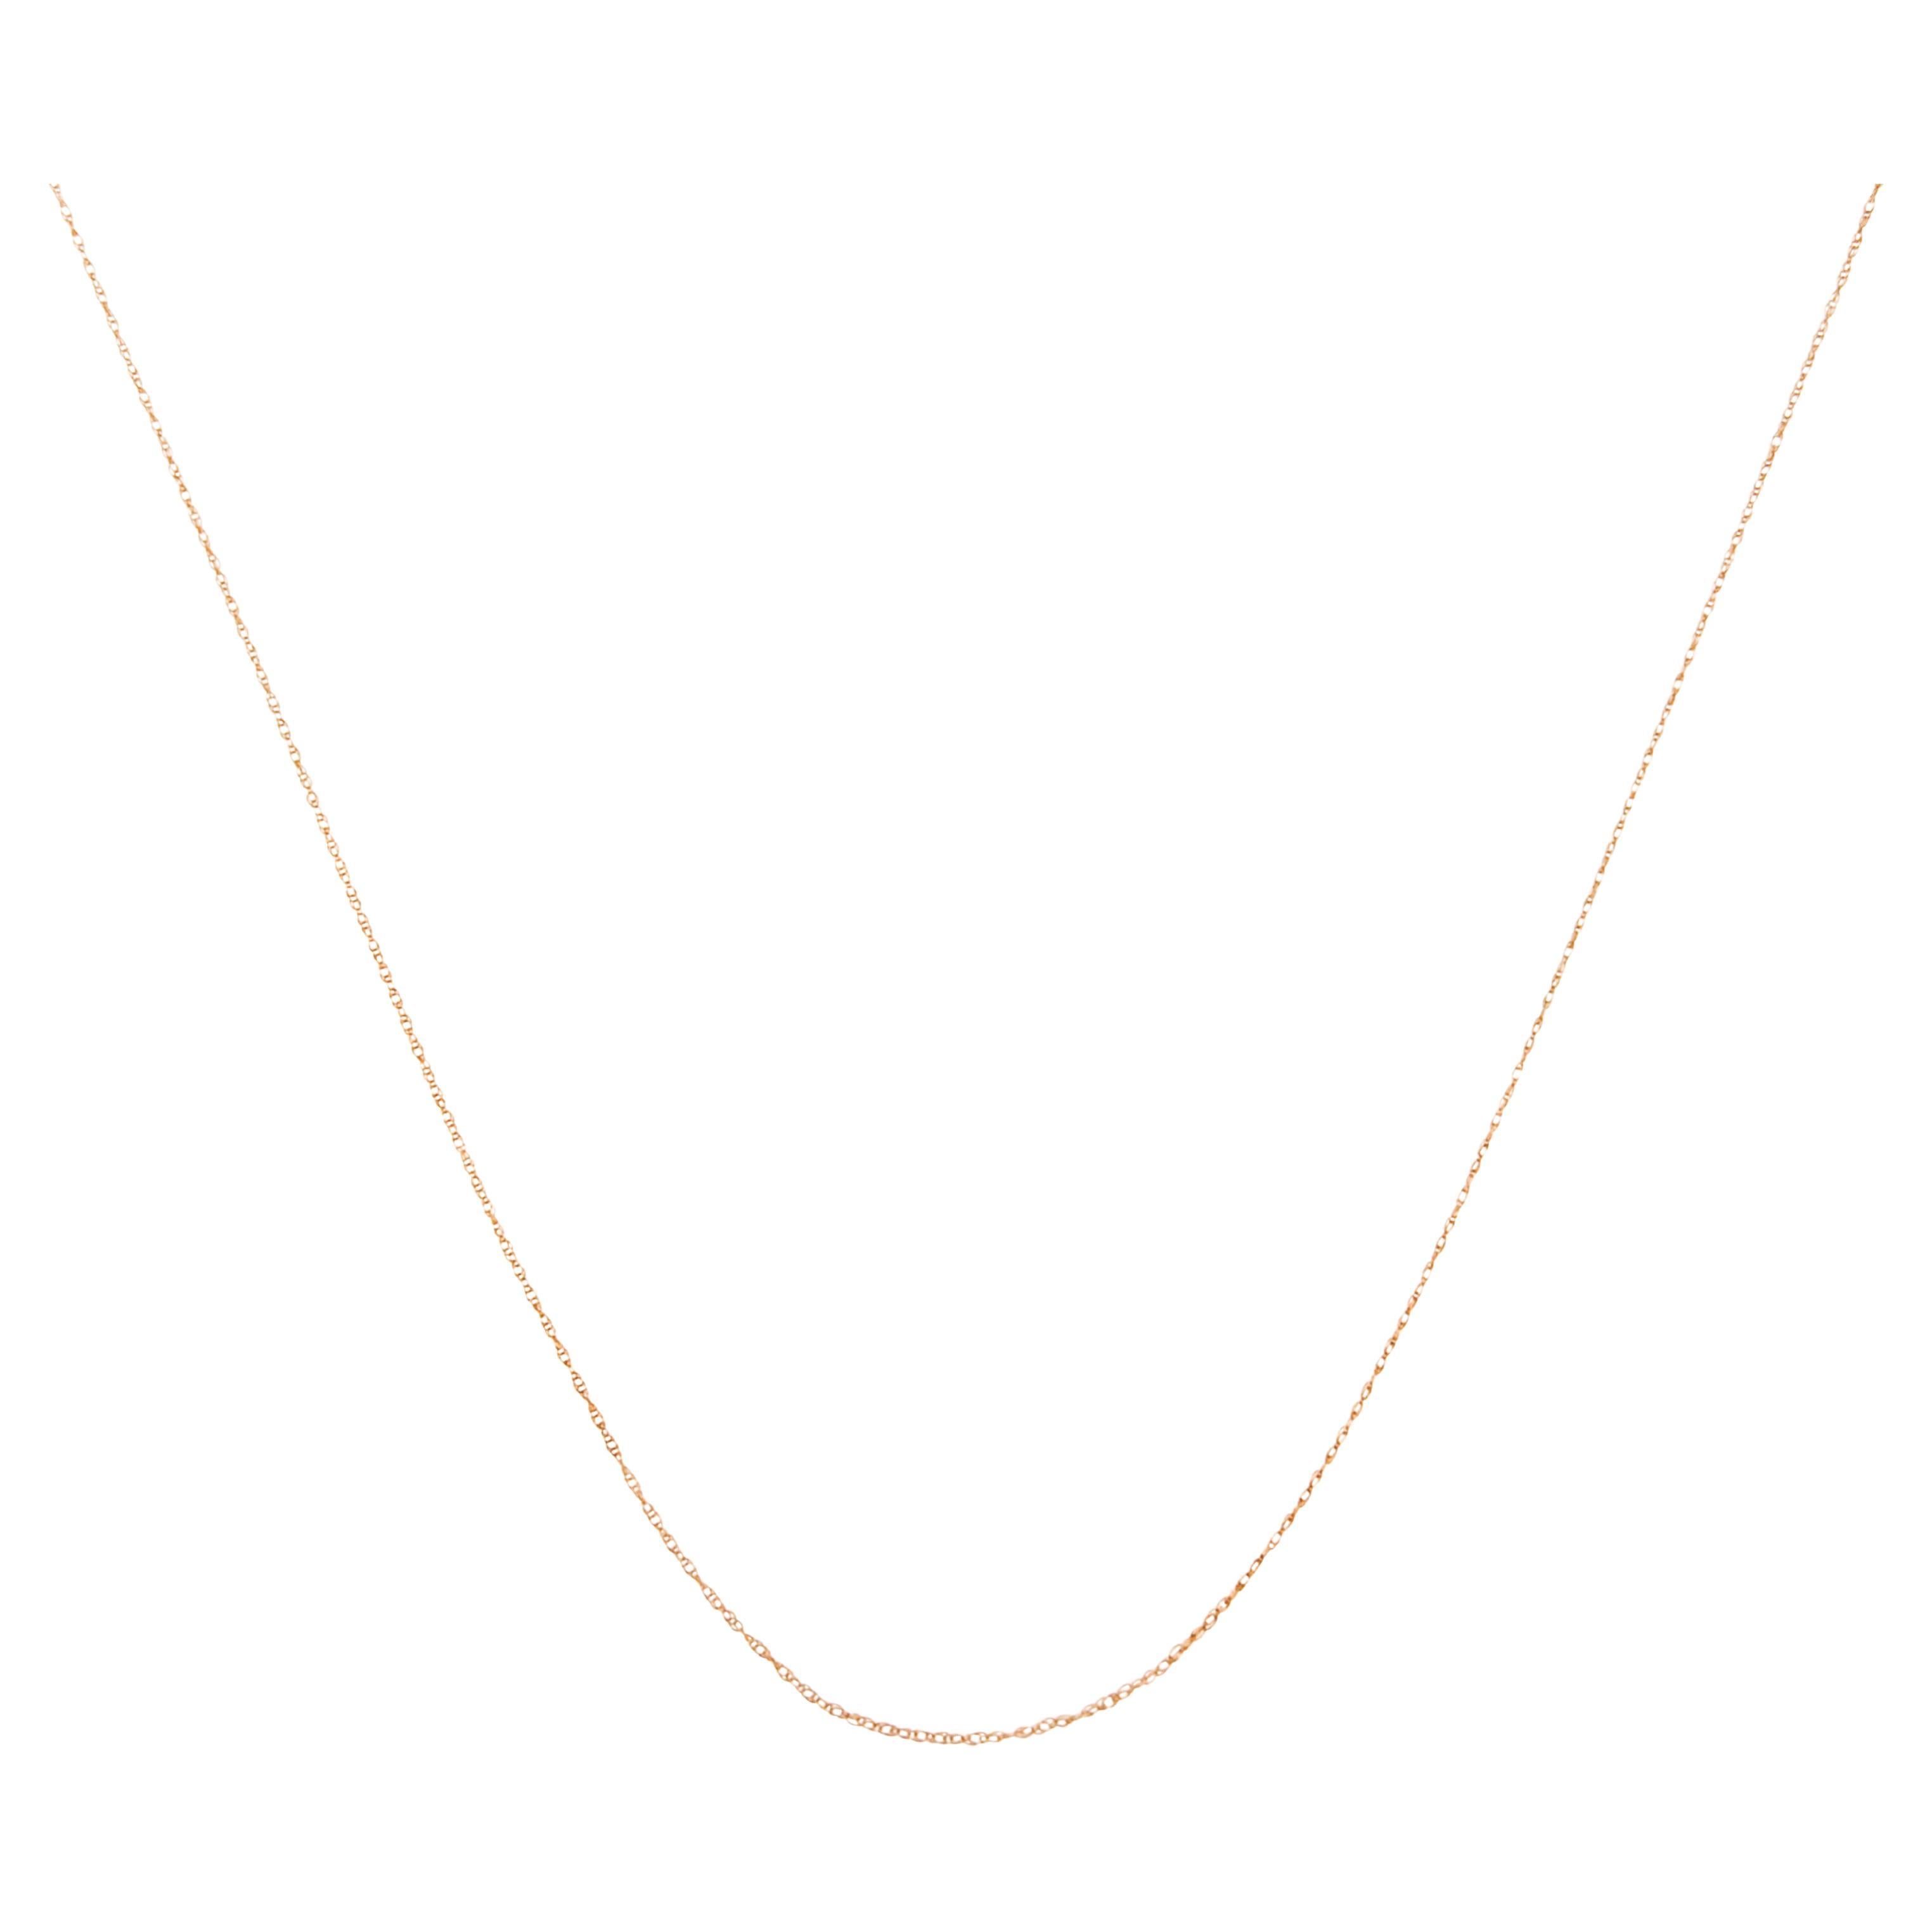 Chaîne collier à chaîne unisexe en or rose massif 10 carats, mince et souple